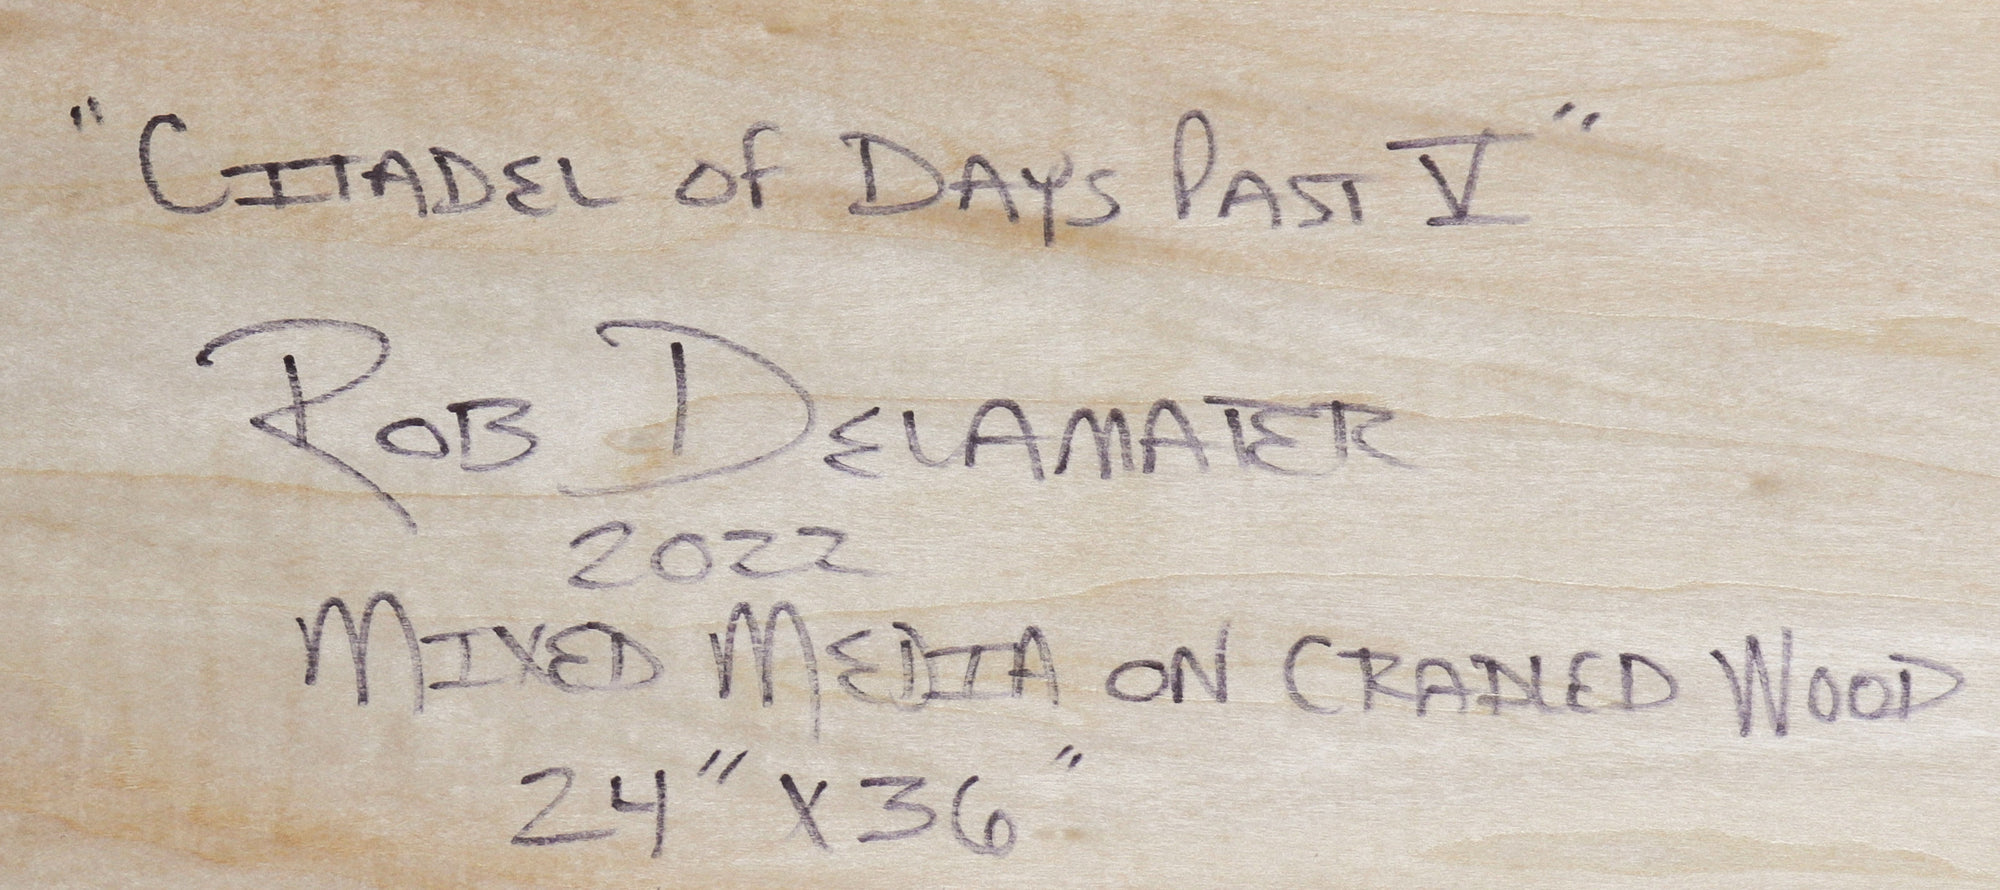 <i>Citadel of Days Past V</i> <br>2022 Mixed Media on Cradled Wood <br><br>#C1972